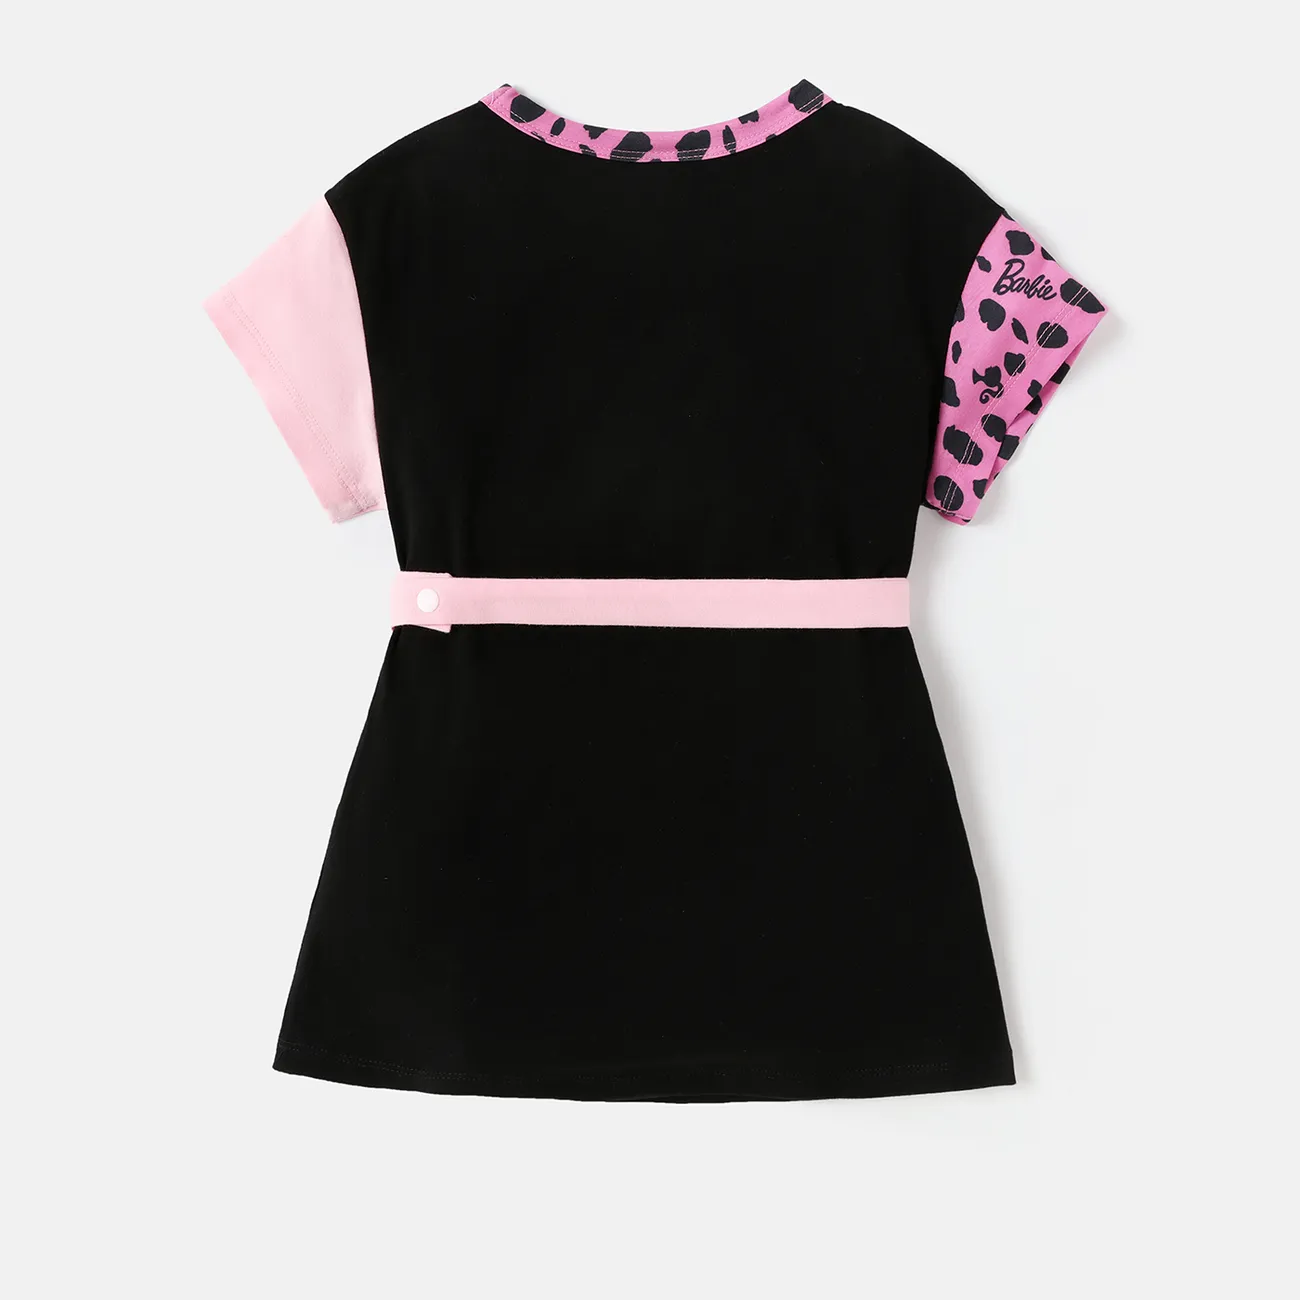 باربي طفل / طفل فتاة ليوبارد / طباعة ملونة نايا™ فستان قصير الأكمام مع فاني باك كتلة اللون big image 1